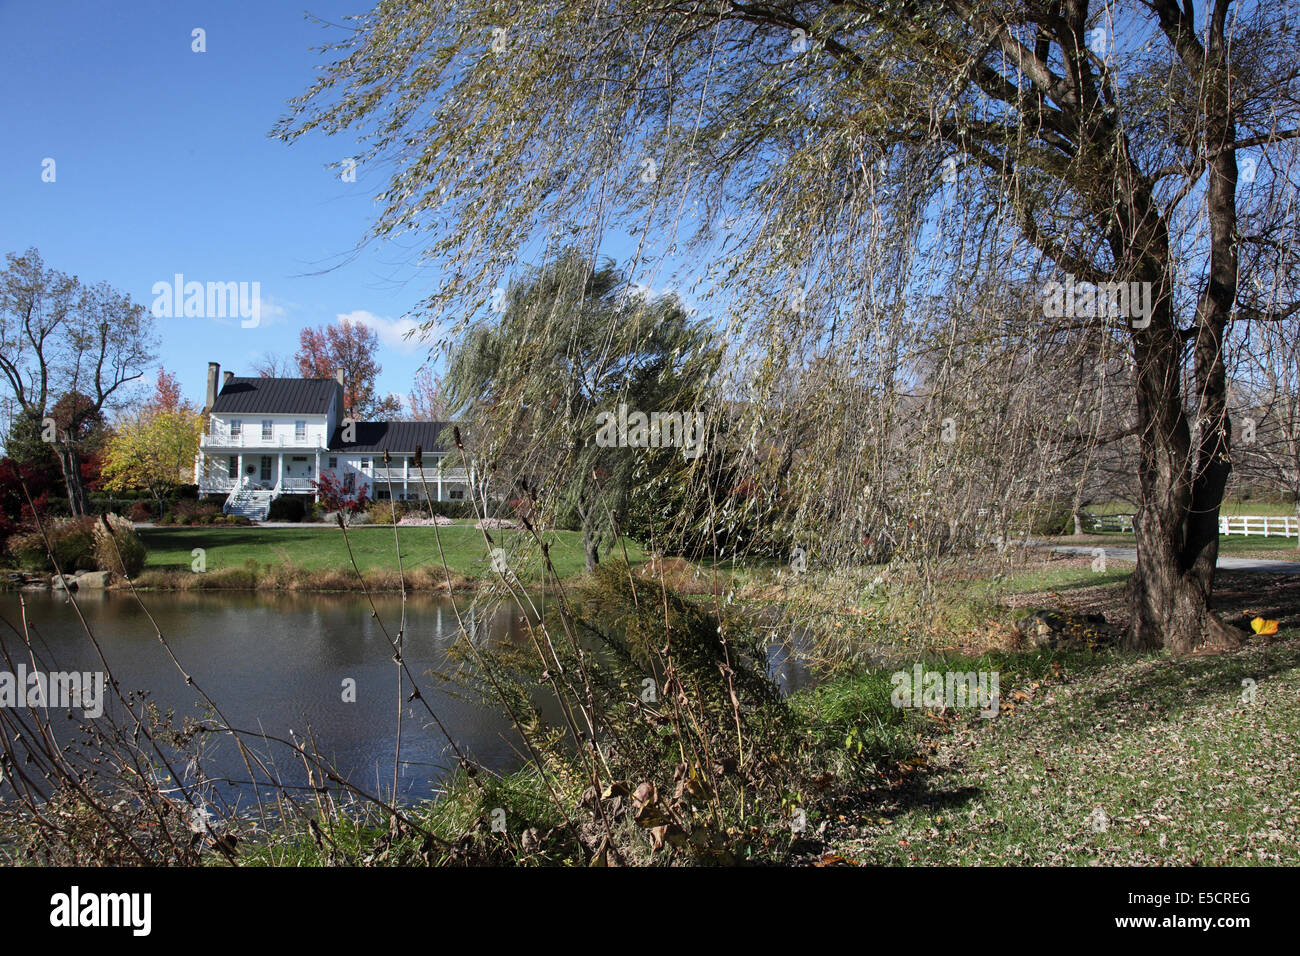 Maison coloniale avec pelouse, Étang et saule pleureur à l'avant-plan, les USA. Banque D'Images